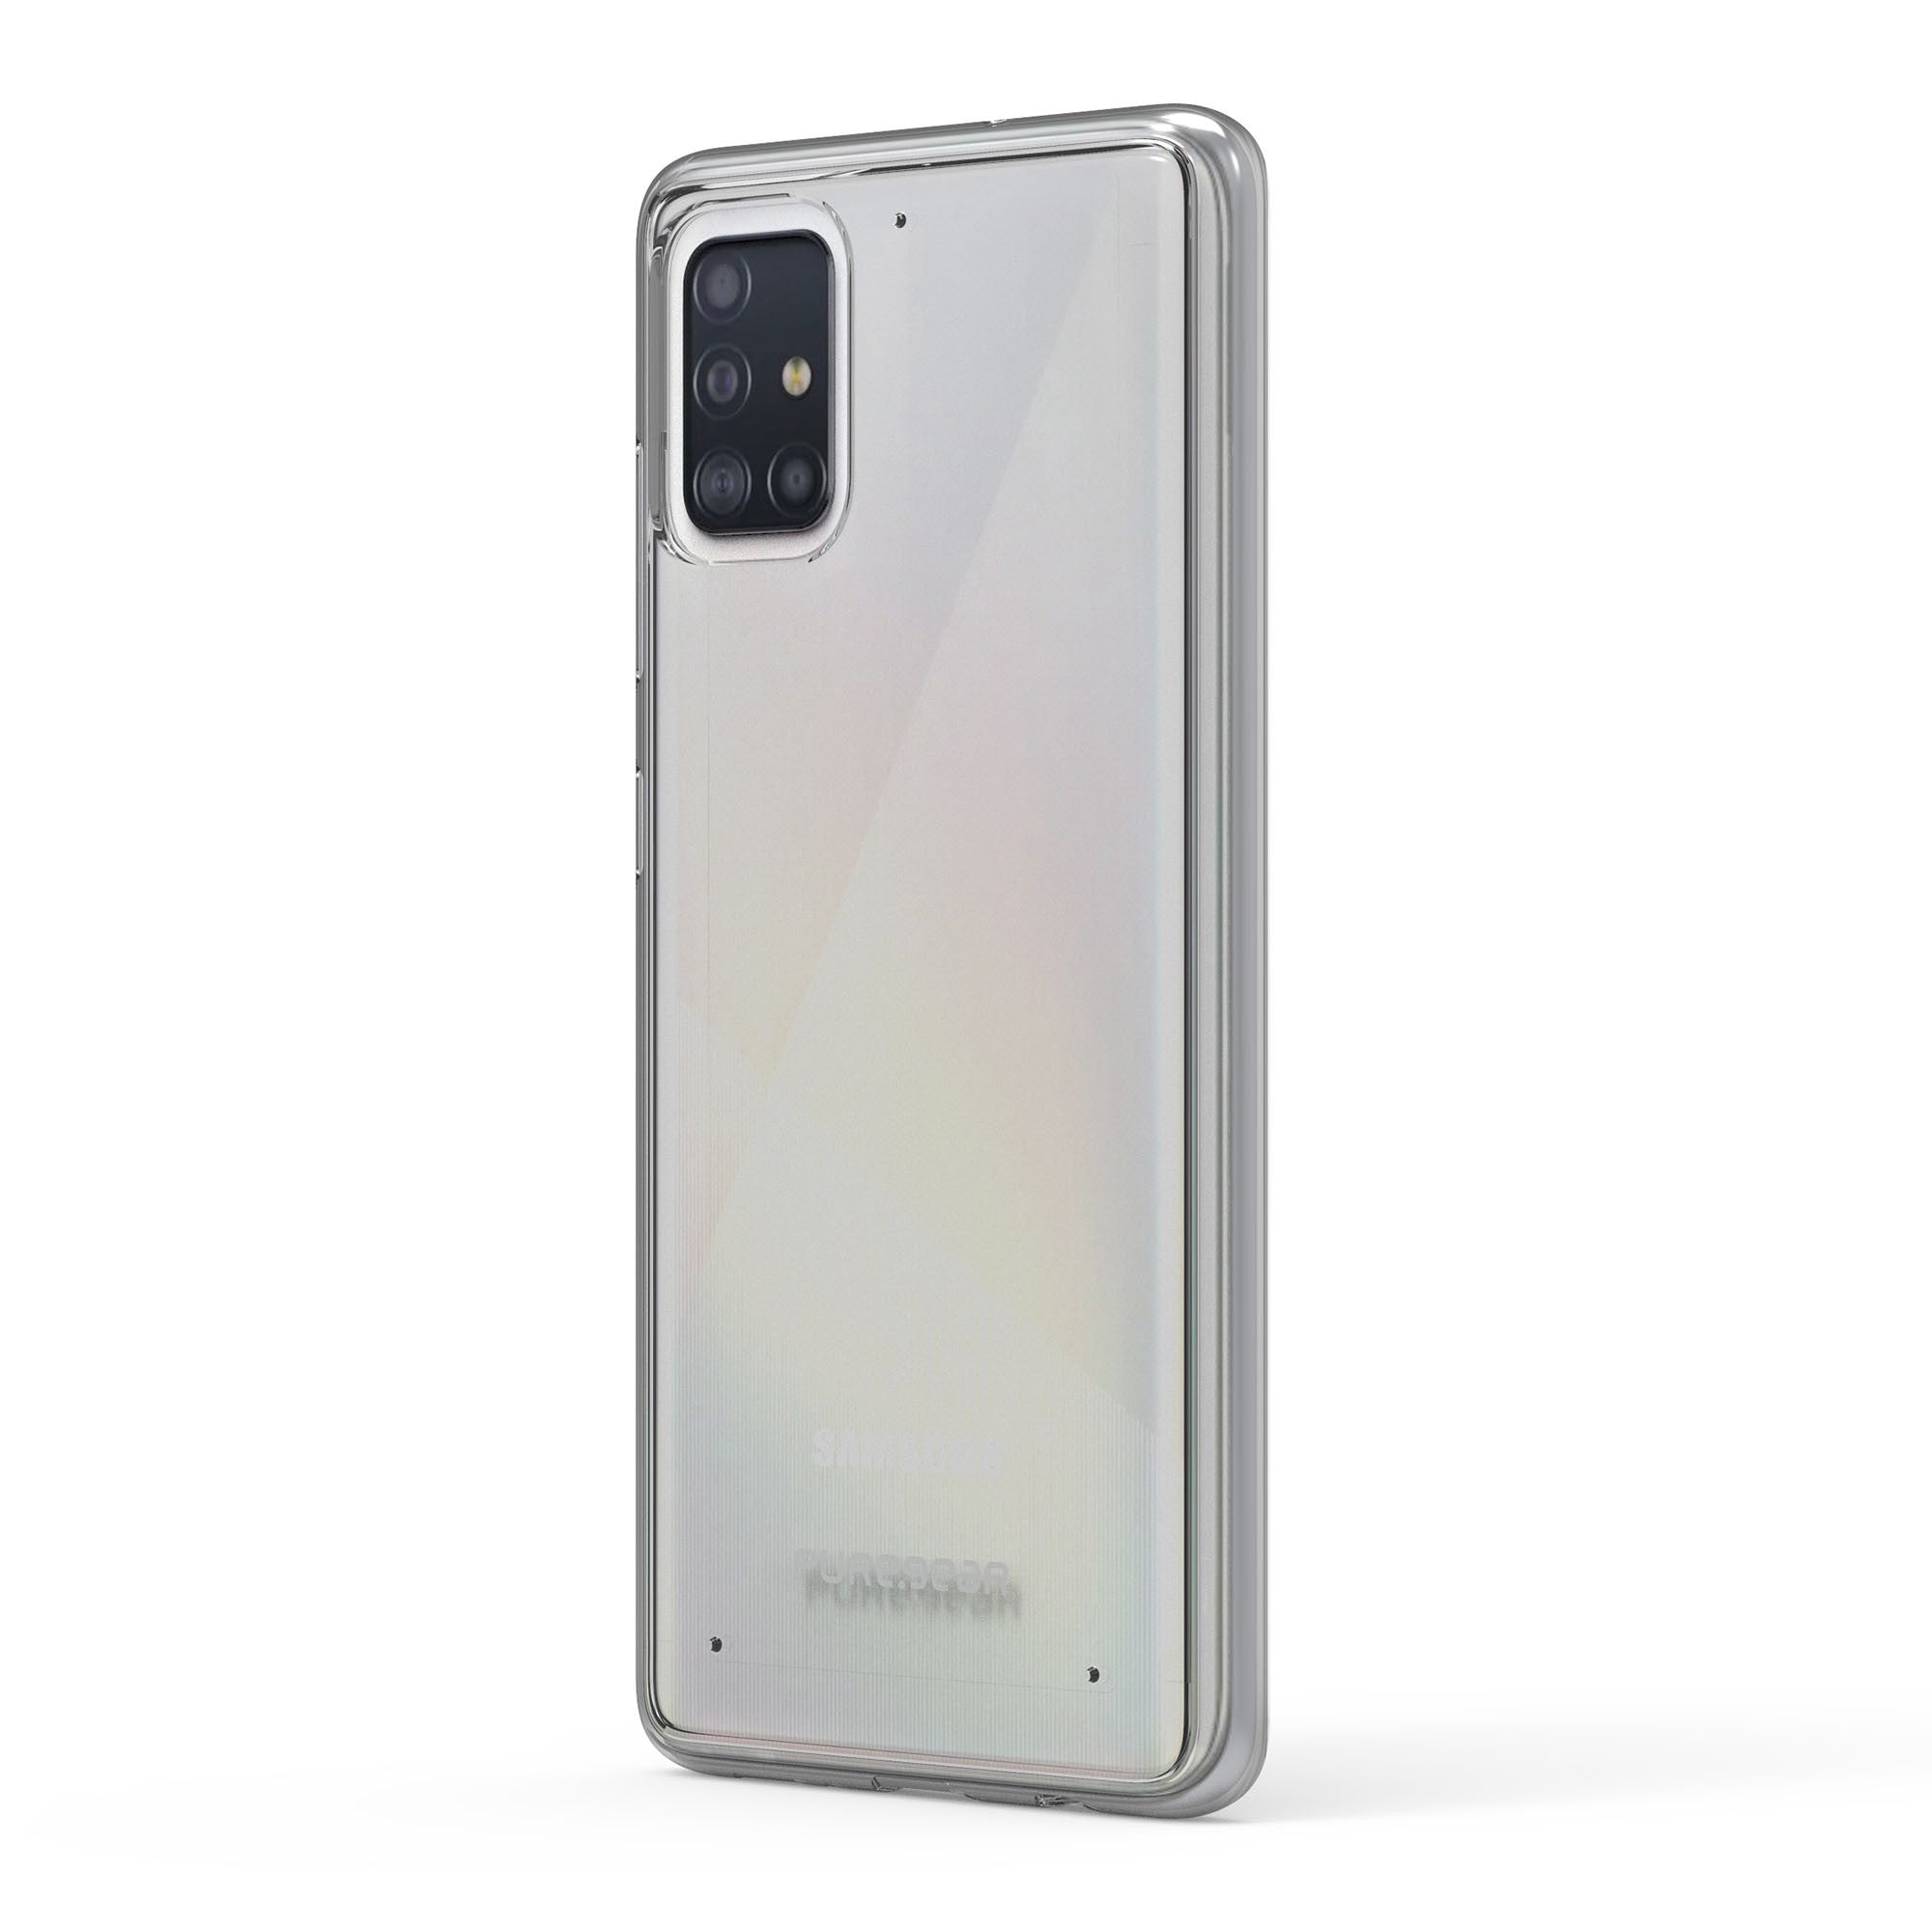 Samsung Galaxy A51 PureGear Clear Slim Shell Case - 15-07084